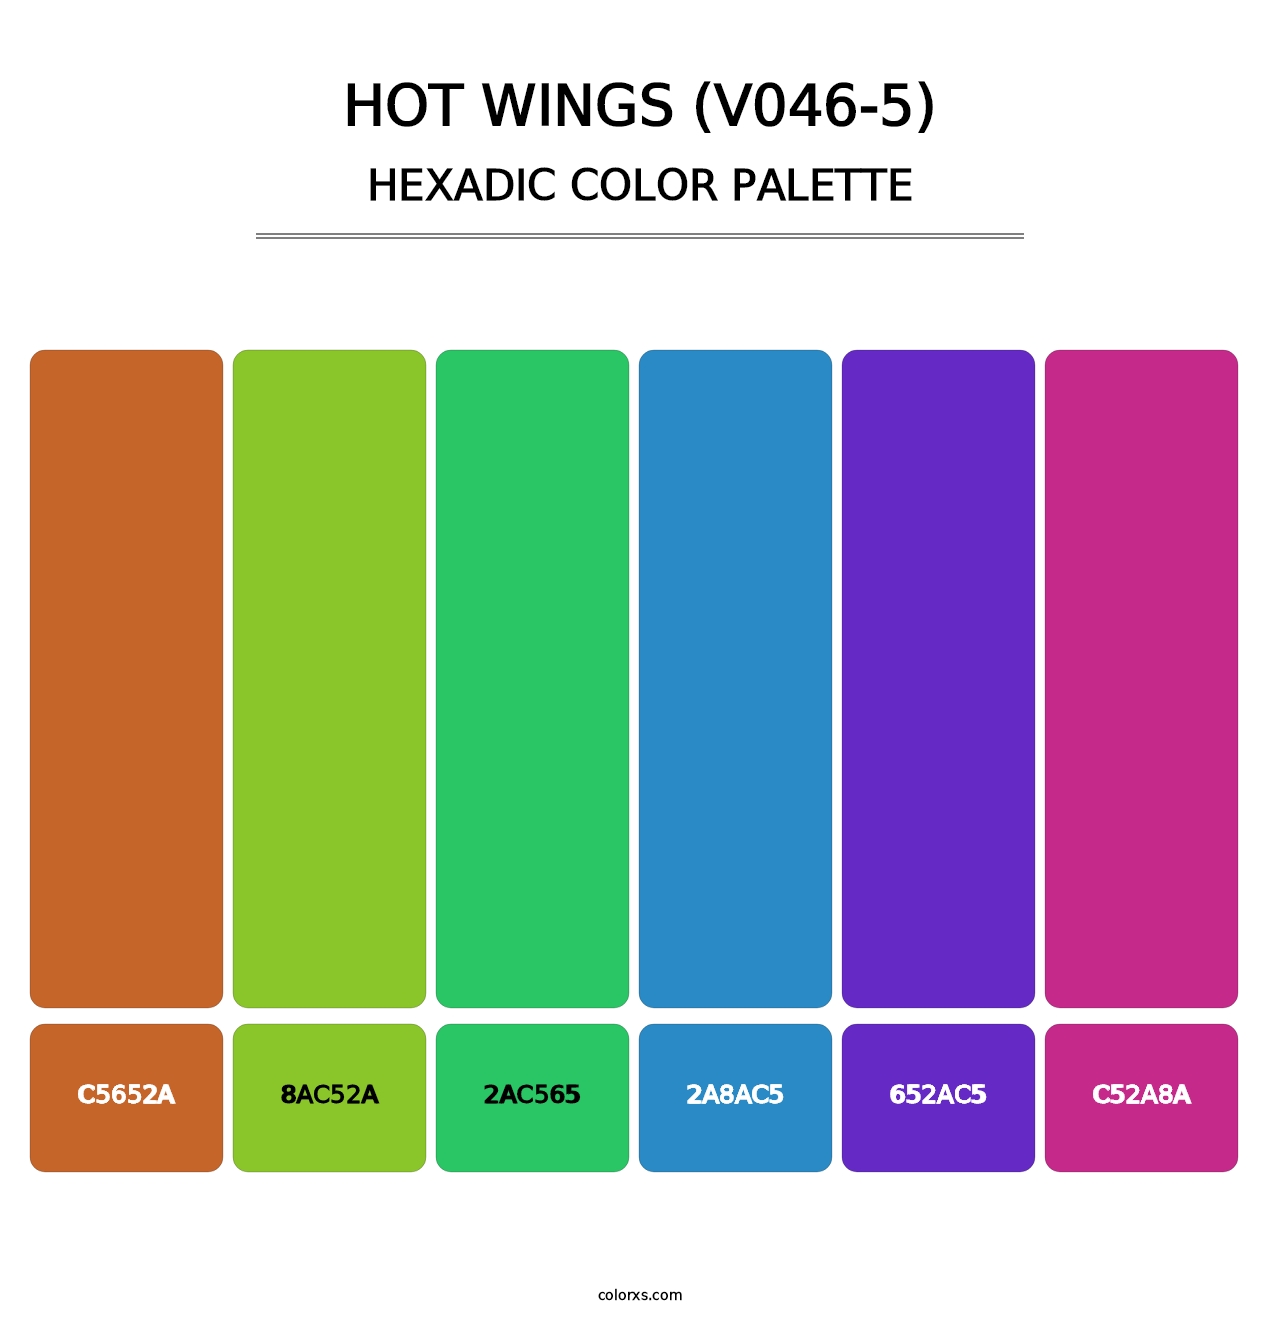 Hot Wings (V046-5) - Hexadic Color Palette